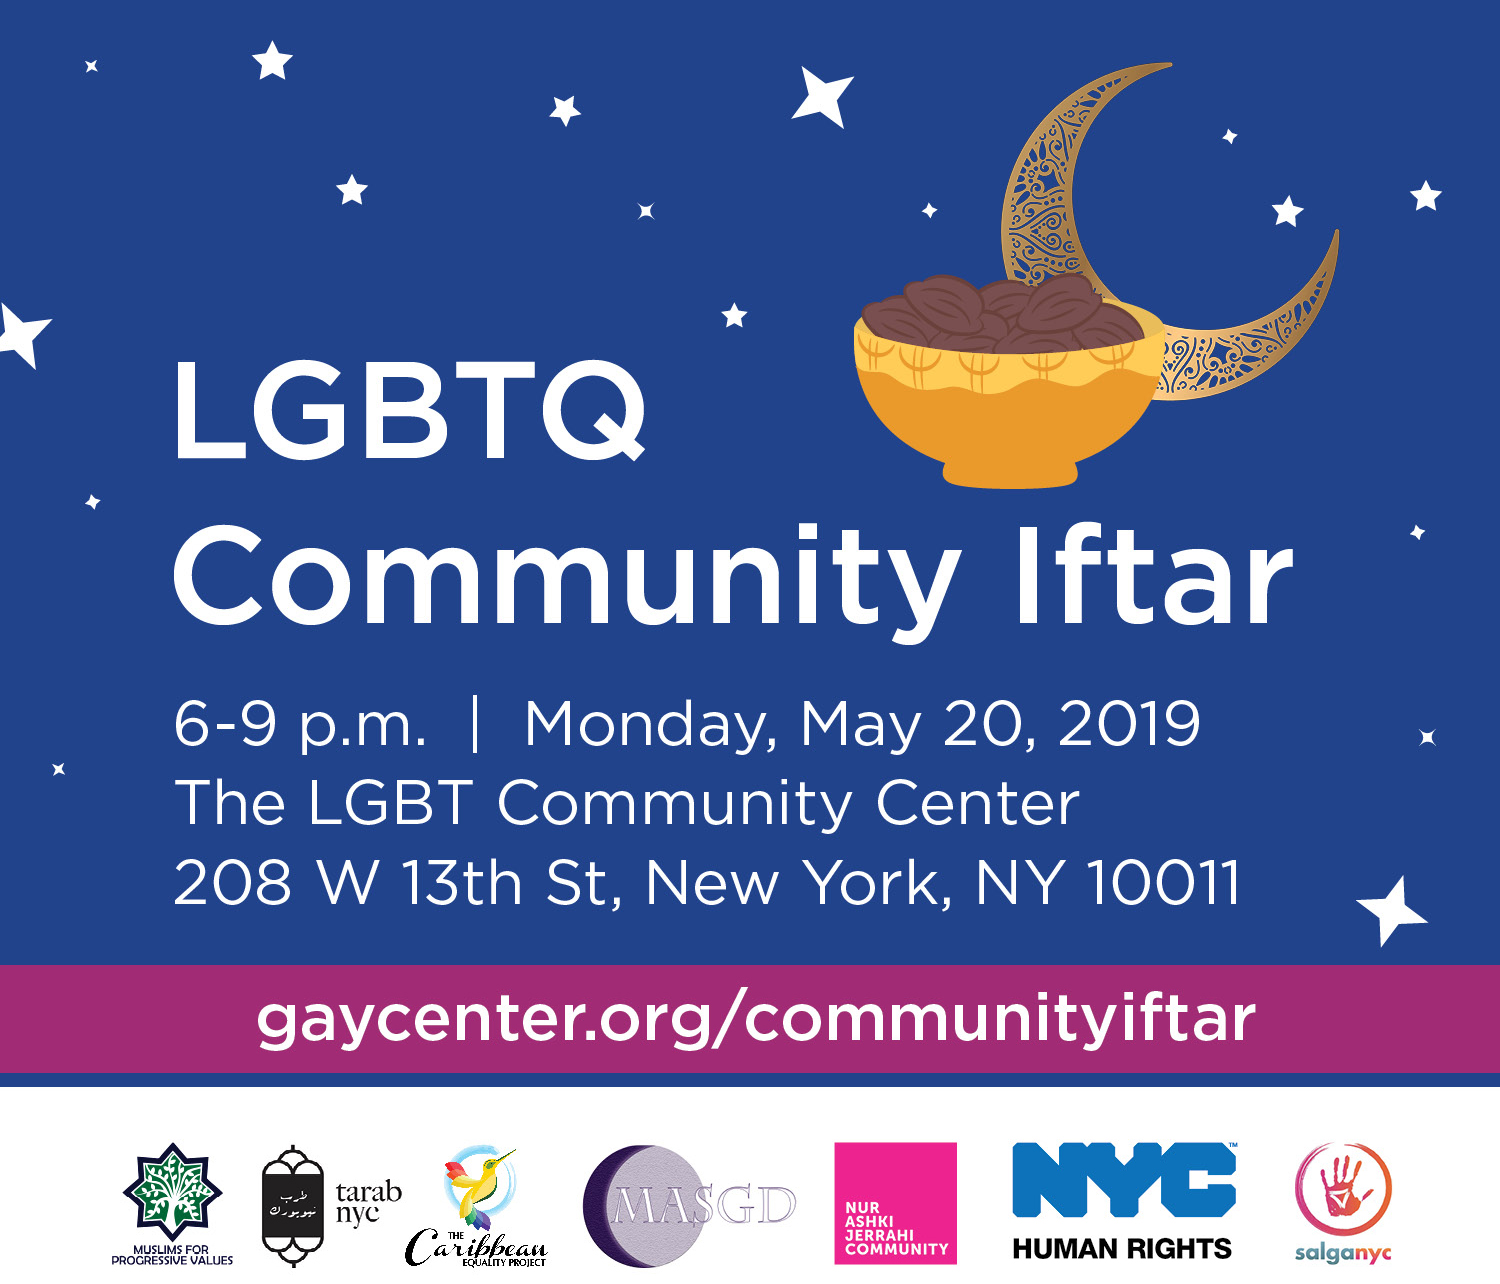 LGBTQ Community Iftar 2019